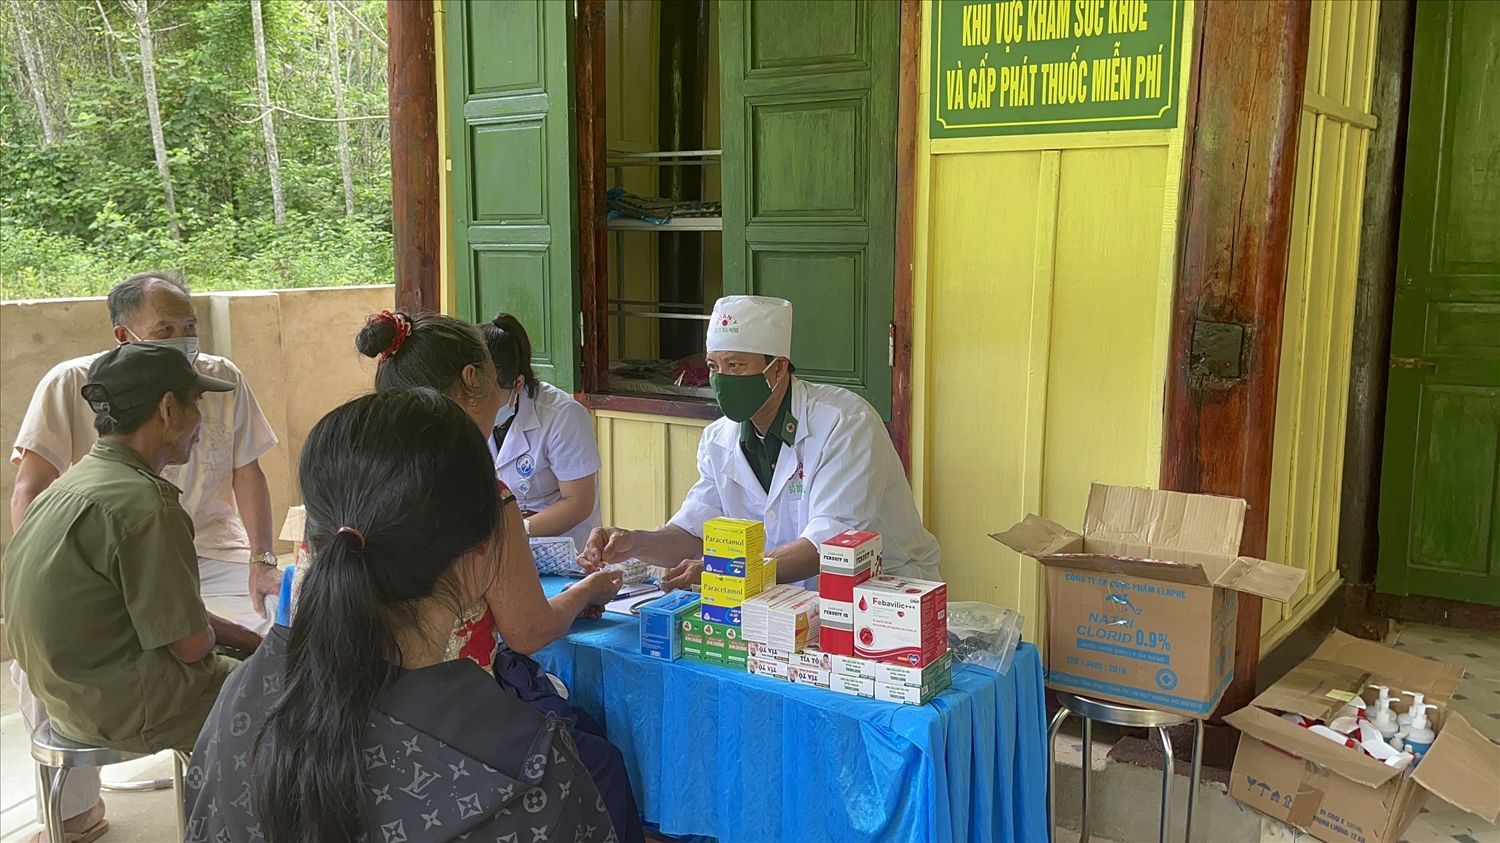 Khám chữa bệnh cho người dân tại ngôi nhà thiện nguyện Đồn Biên phòng Tam Hợp, BĐBP Nghệ An